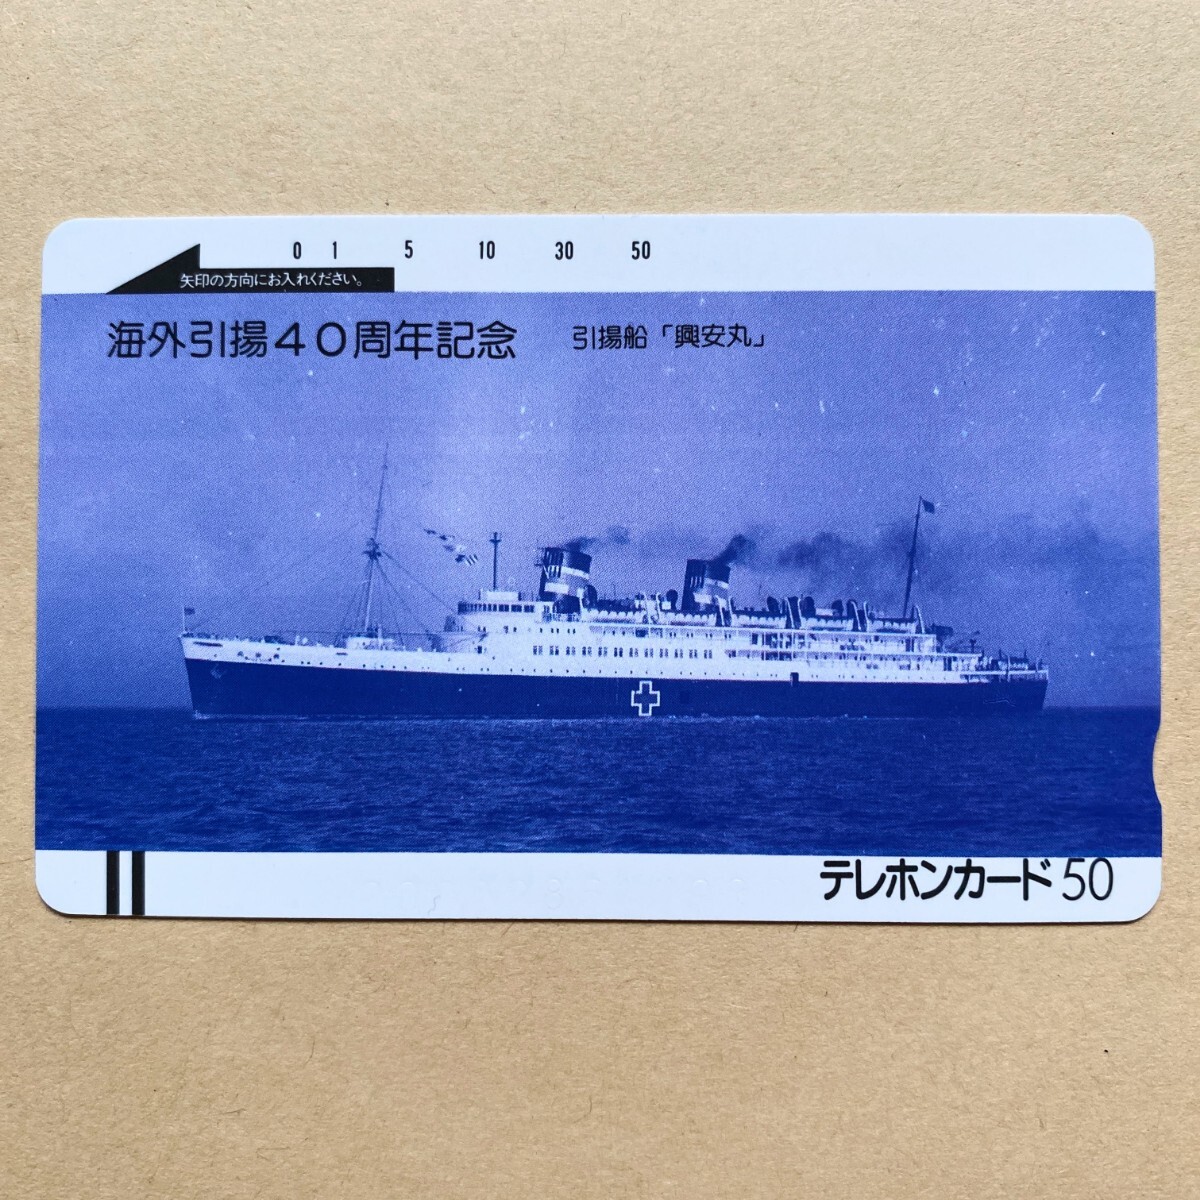 【未使用】船舶テレカ 50度 海外引揚40周年記念 引揚船「興安丸」_画像1